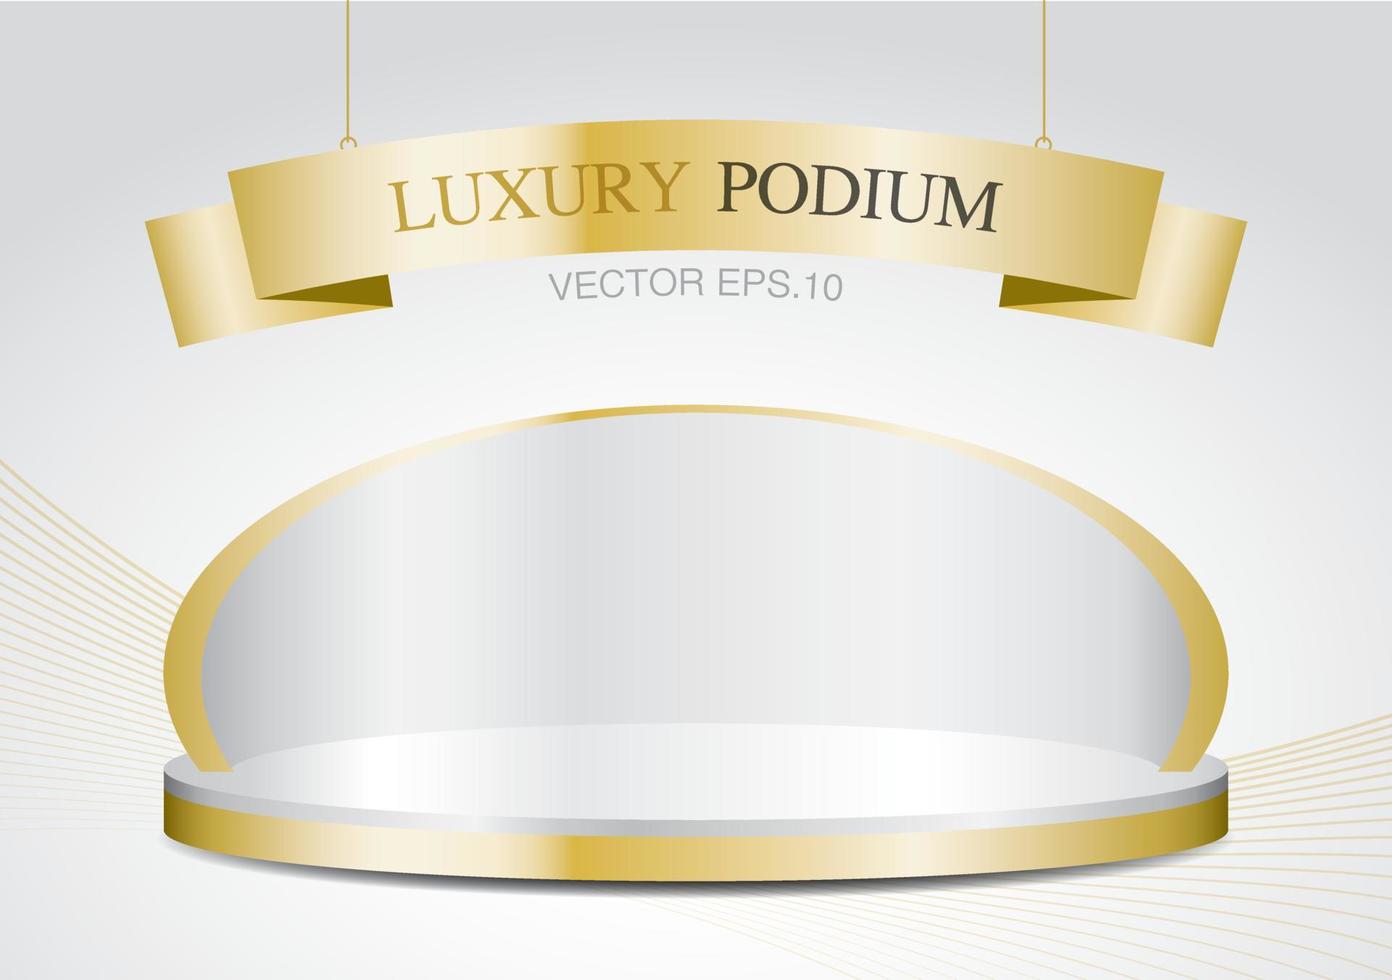 scène d'affichage en or de luxe avec signe de ruban brillant vecteur d'illustration 3d pour mettre votre objet